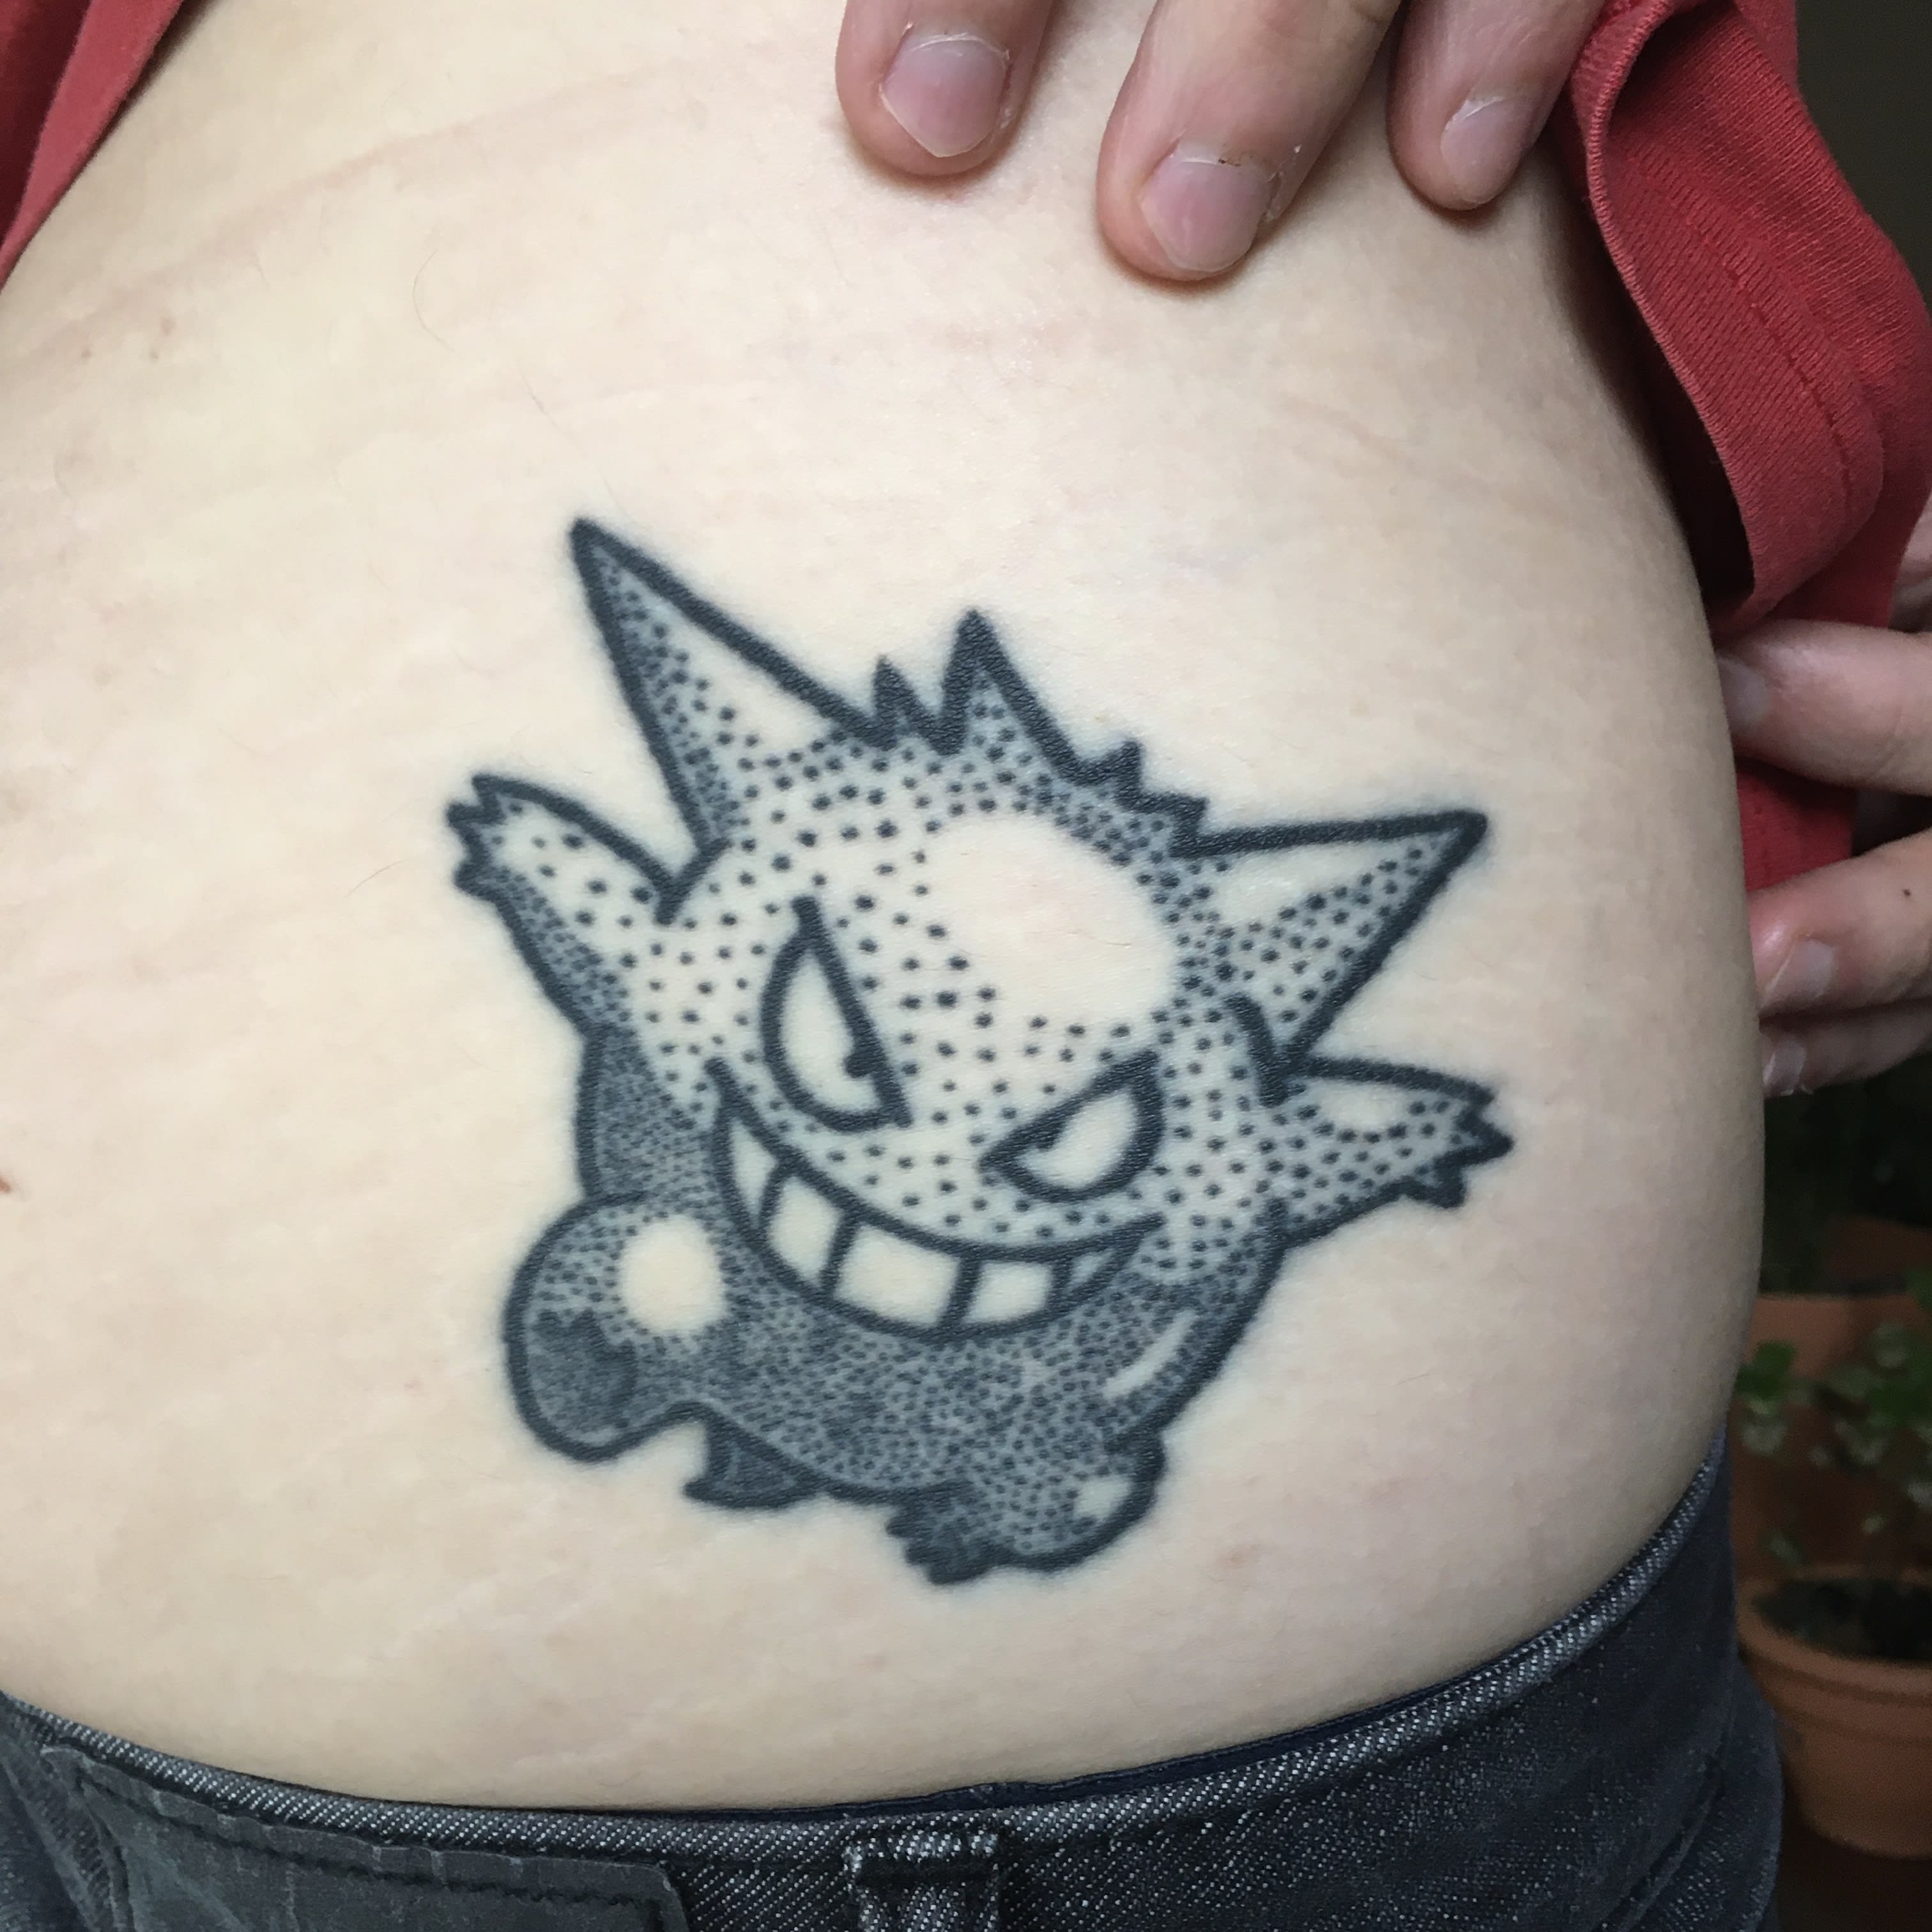 Farti un disegno del tatuaggio del tuo pokémon preferito